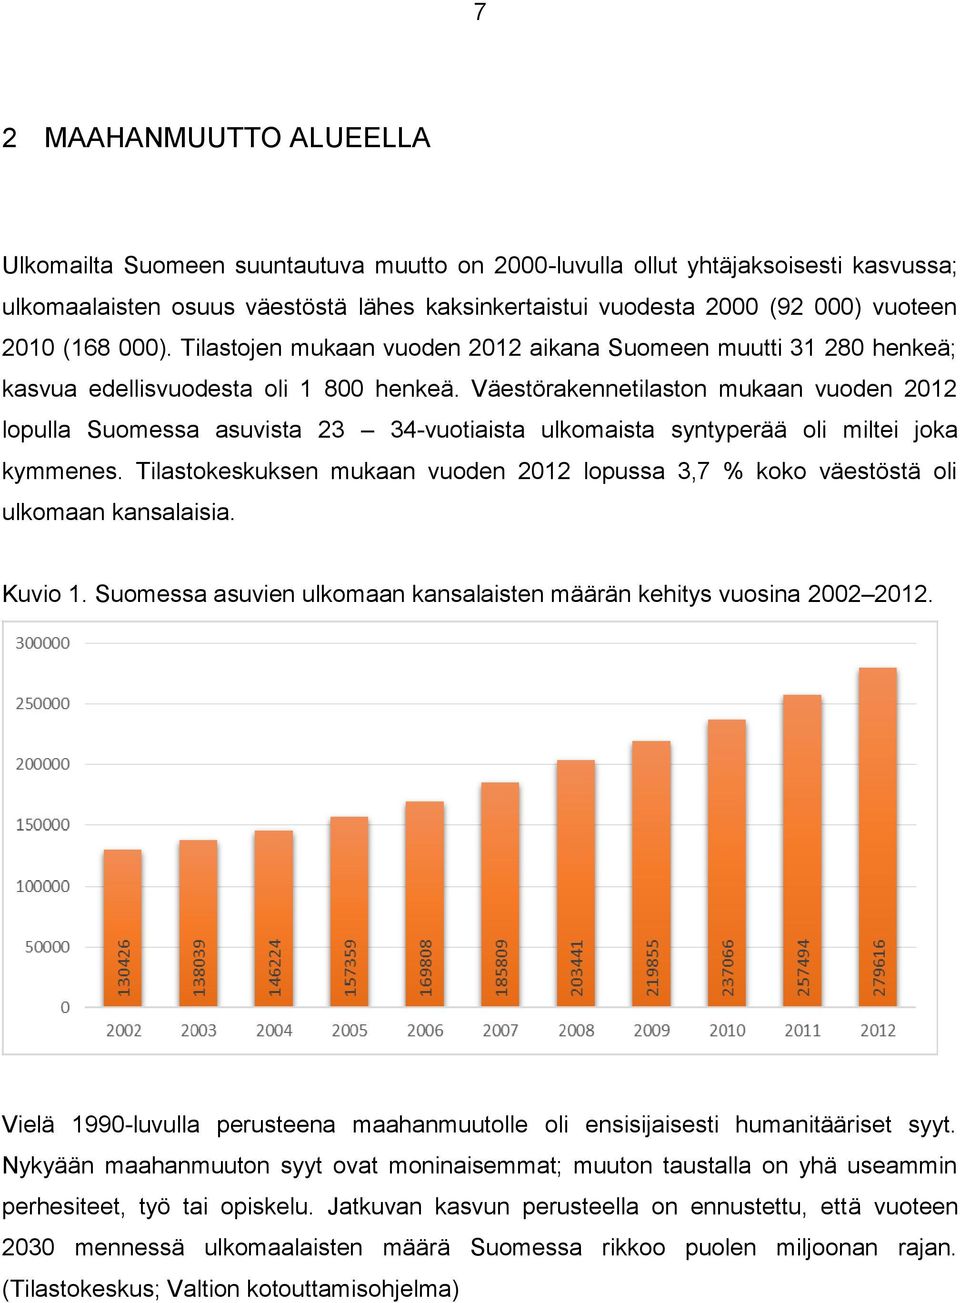 Väestörakennetilaston mukaan vuoden 2012 lopulla Suomessa asuvista 23 34-vuotiaista ulkomaista syntyperää oli miltei joka kymmenes.